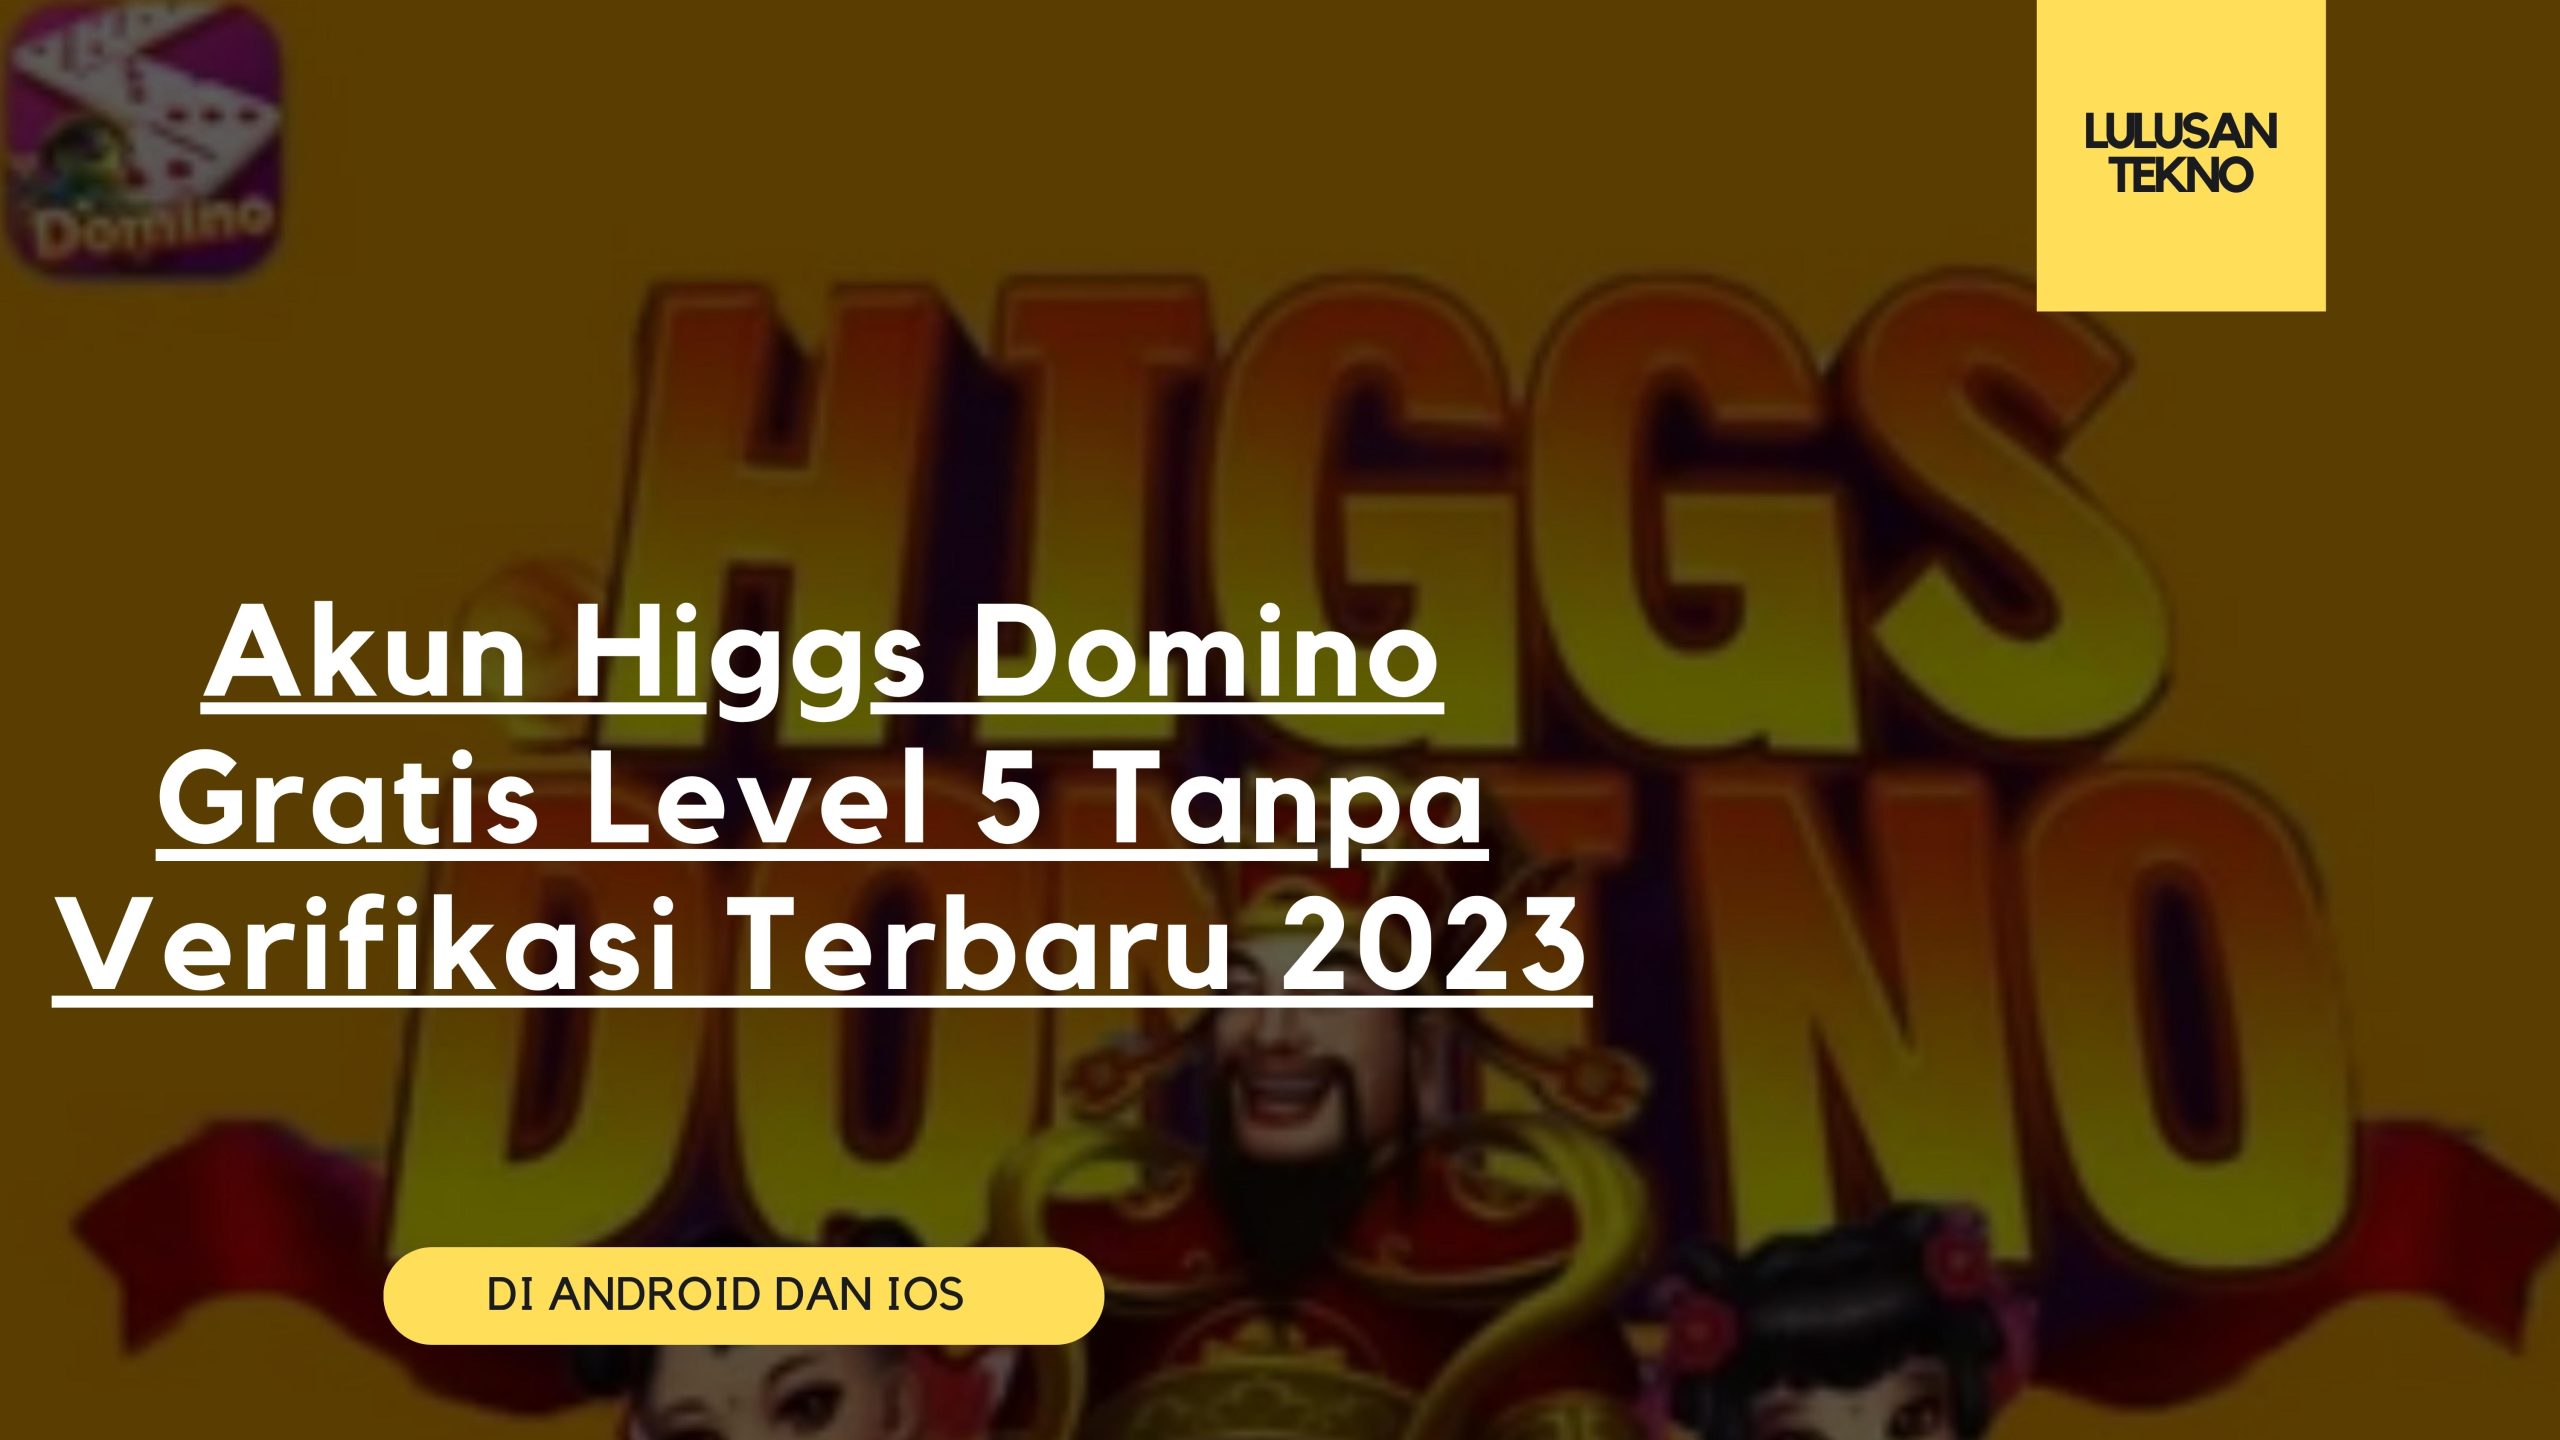 Akun Higgs Domino Gratis Level 5 Tanpa Verifikasi Terbaru 2023